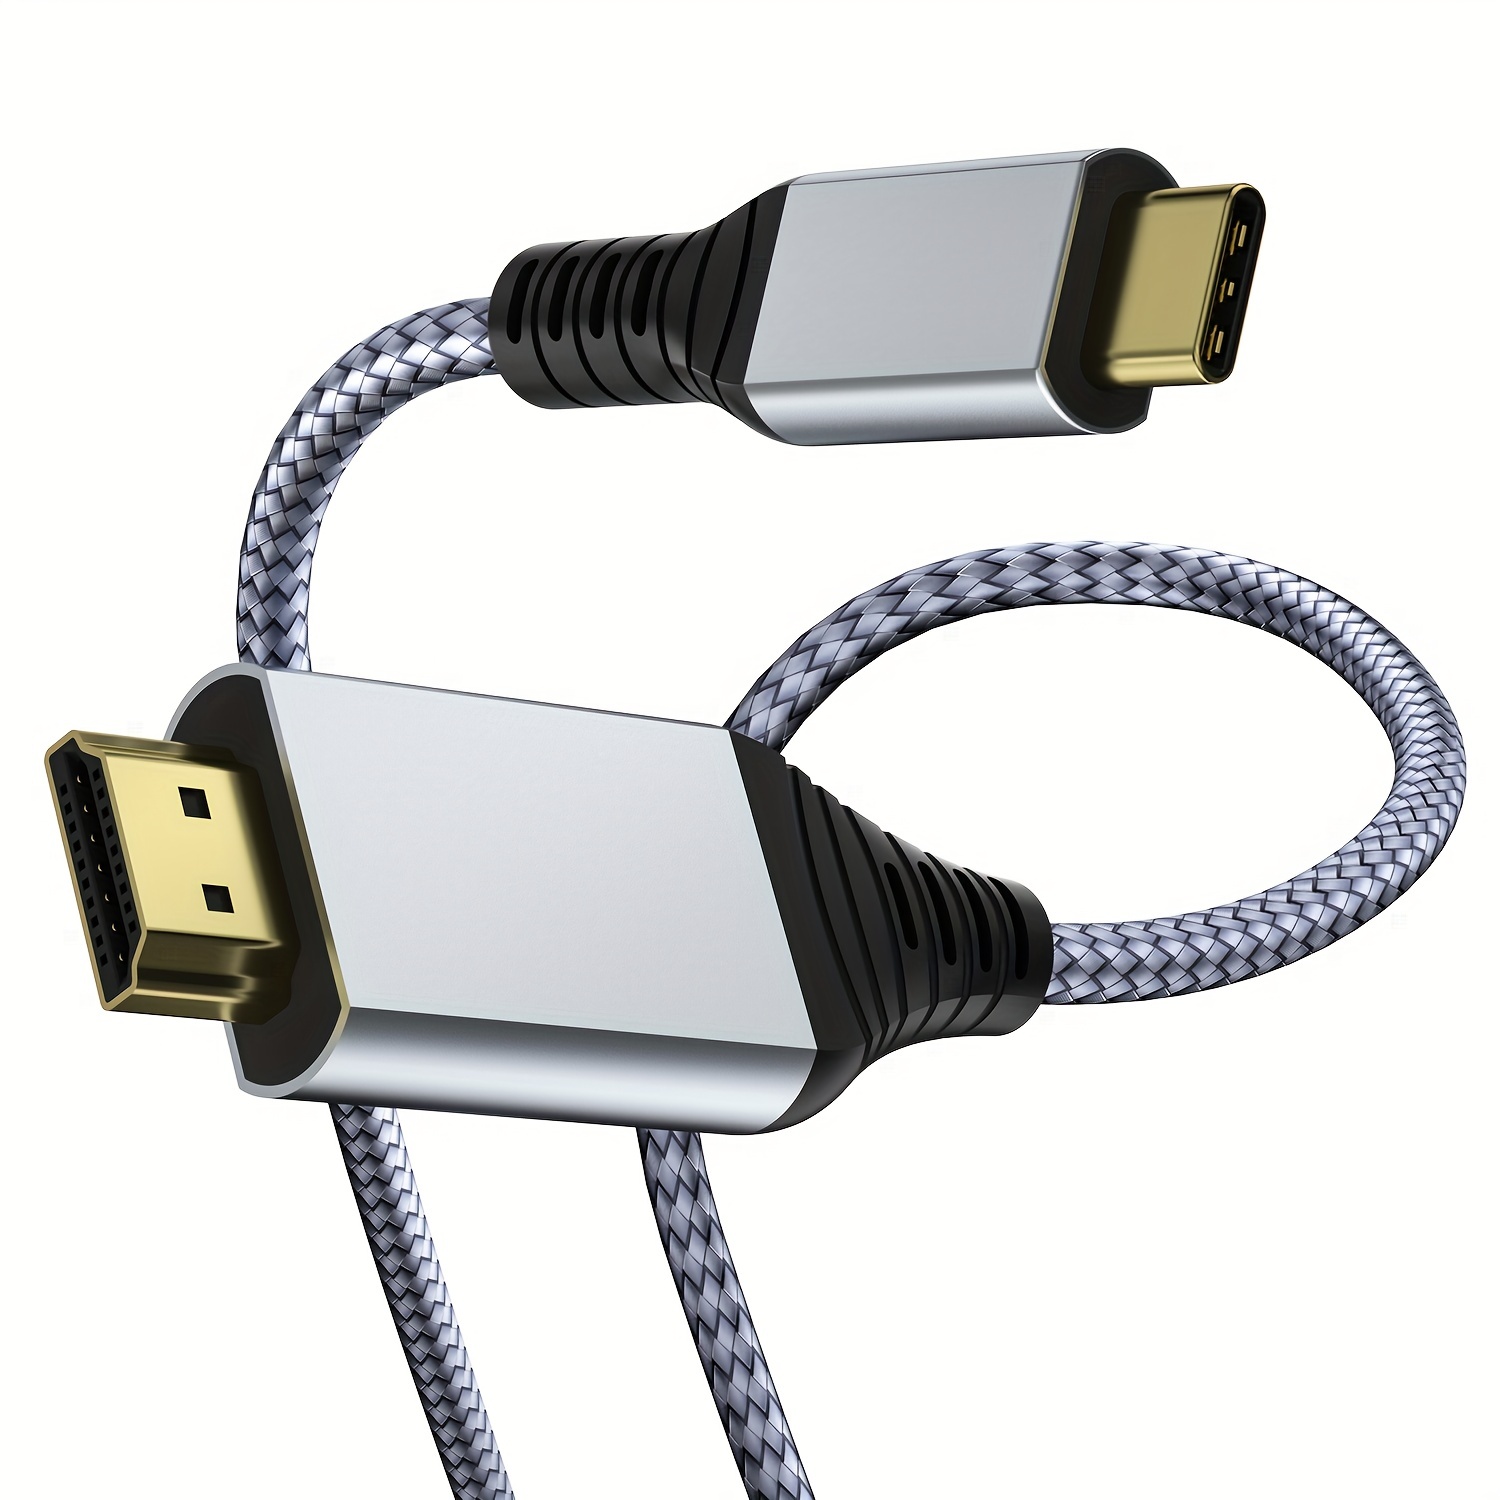 Câble adaptateur USB type-c vers DVI, Thunderbolt 3, pour Macbook